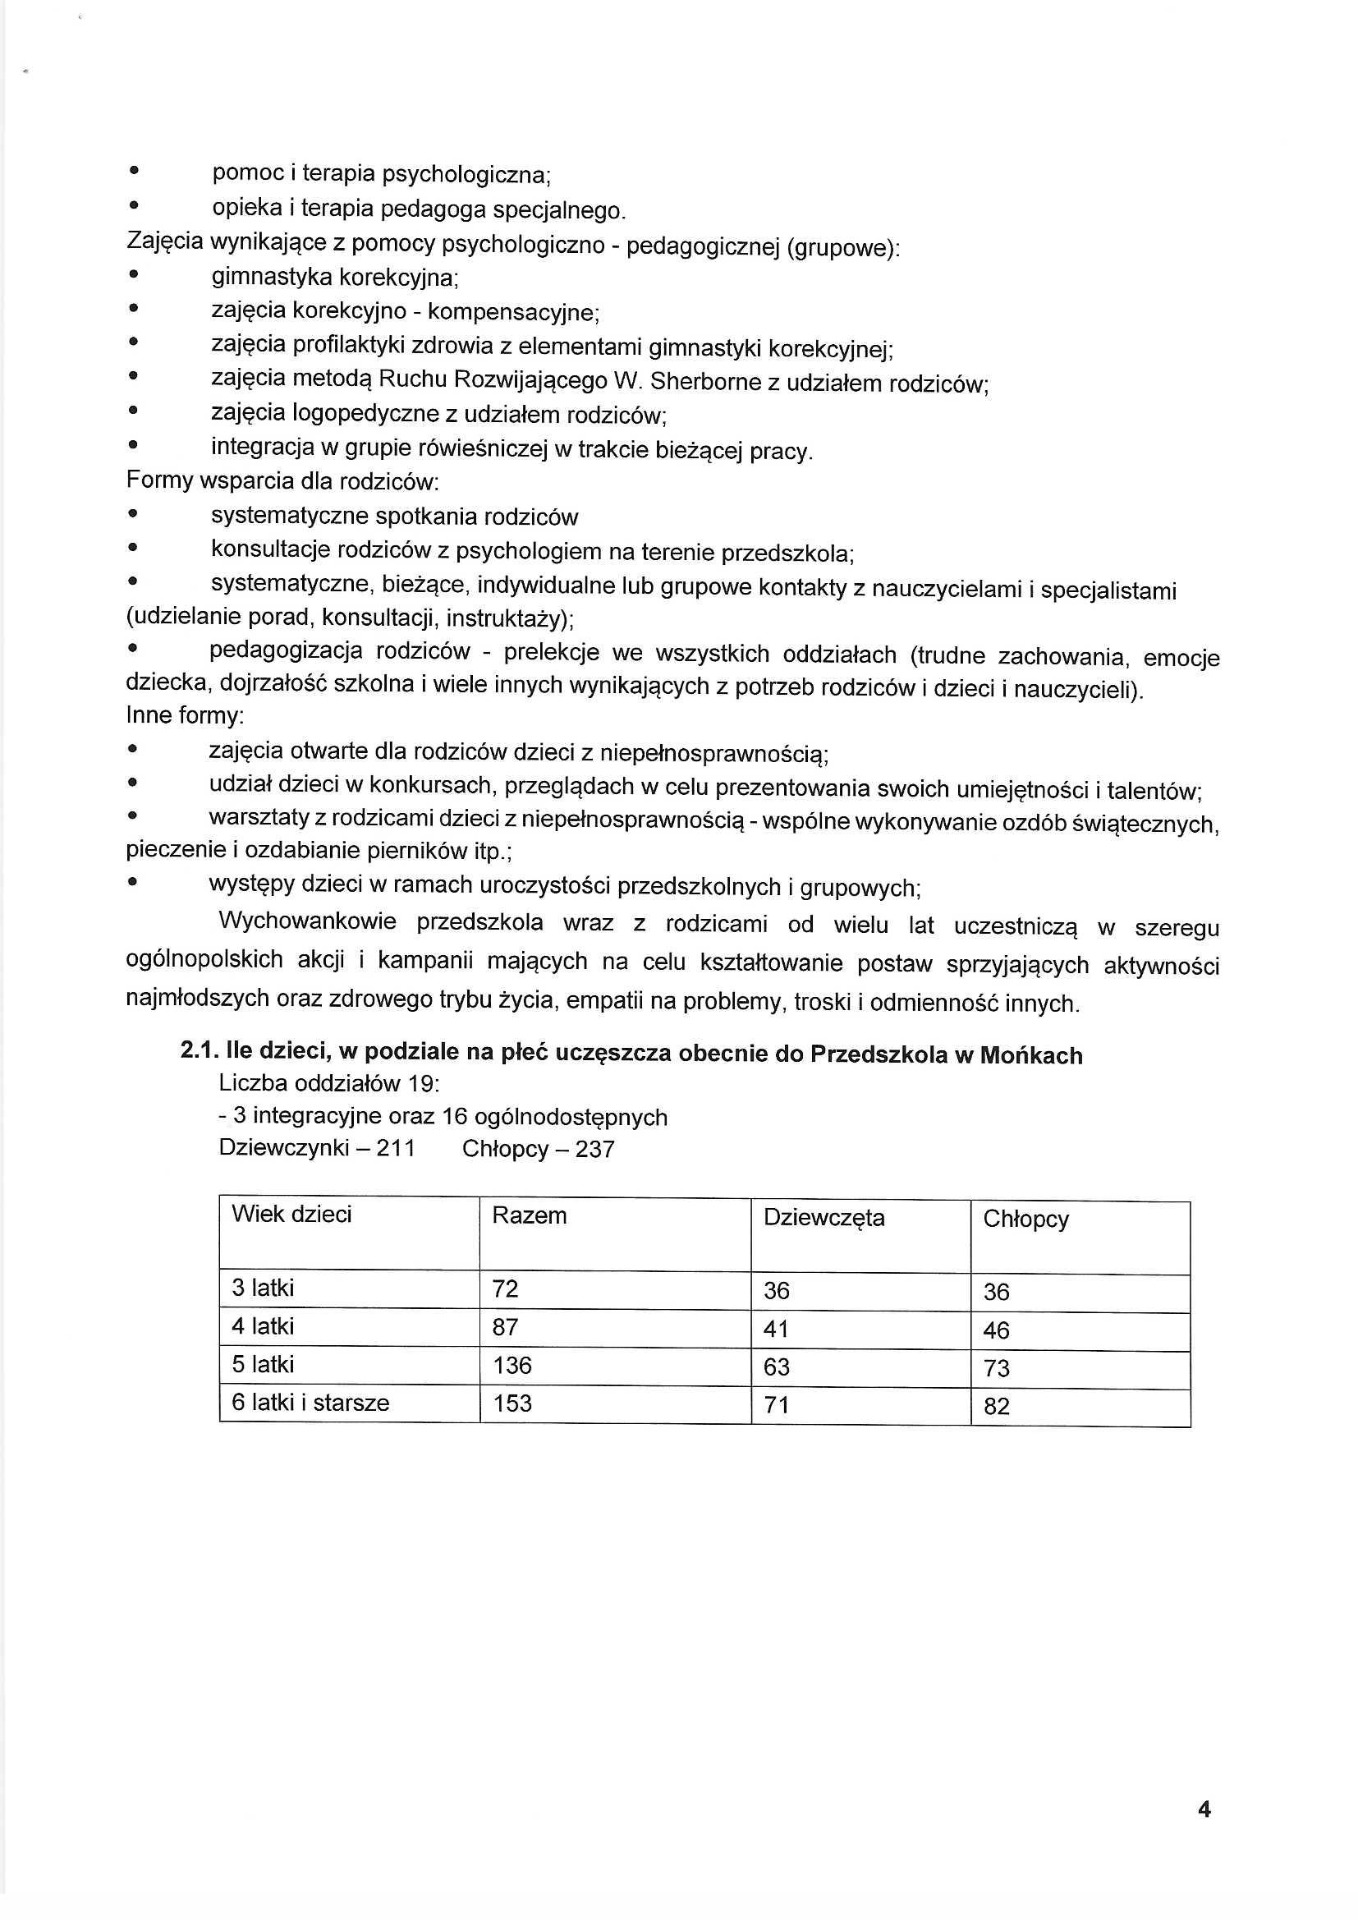 Indywidualna Diagnoza Potrzeb Przedszkola w Mońkach w zakresie wsparcia edukacji przedszkolnej Przedszkola w Mońkach - Obrazek 5